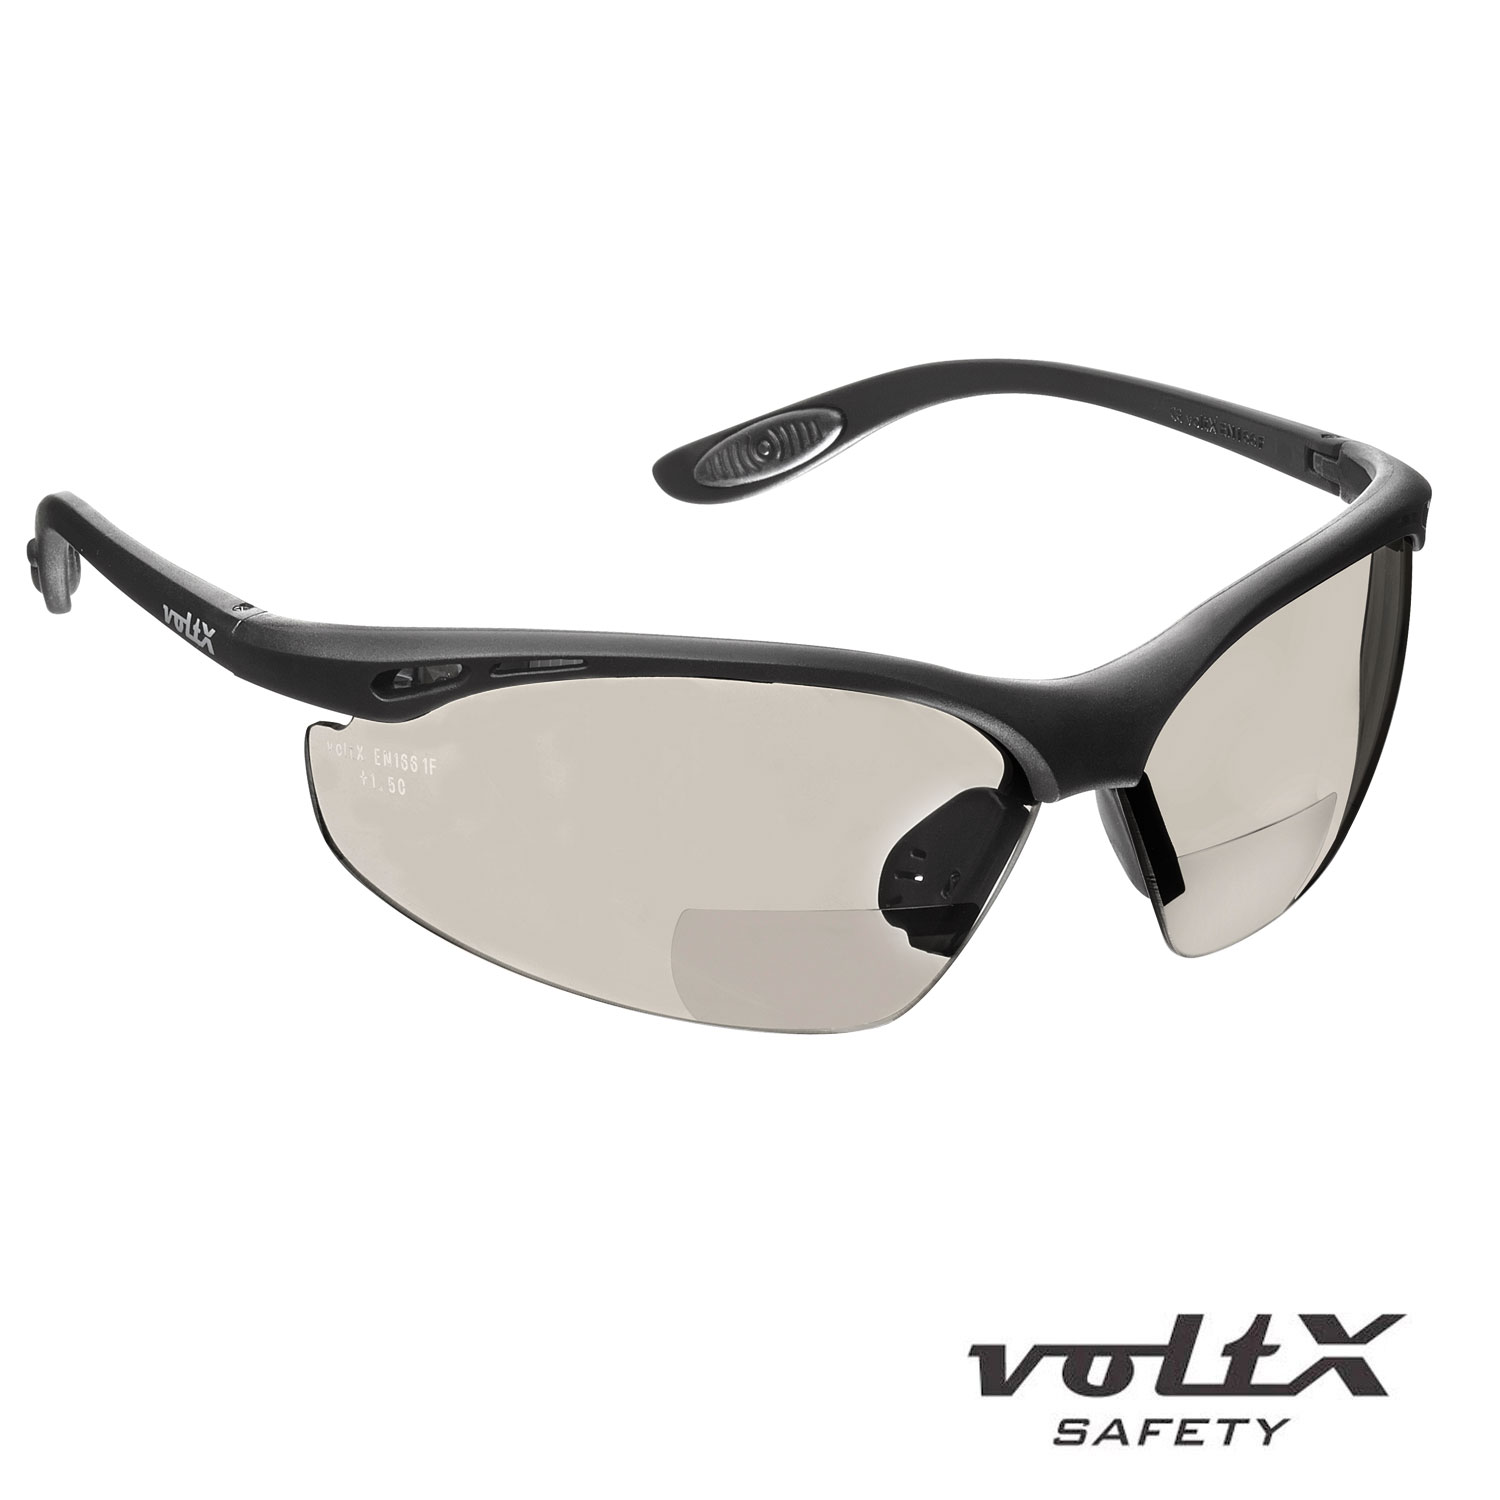 Gafas de seguridad Bifocales Voltx maxima protección